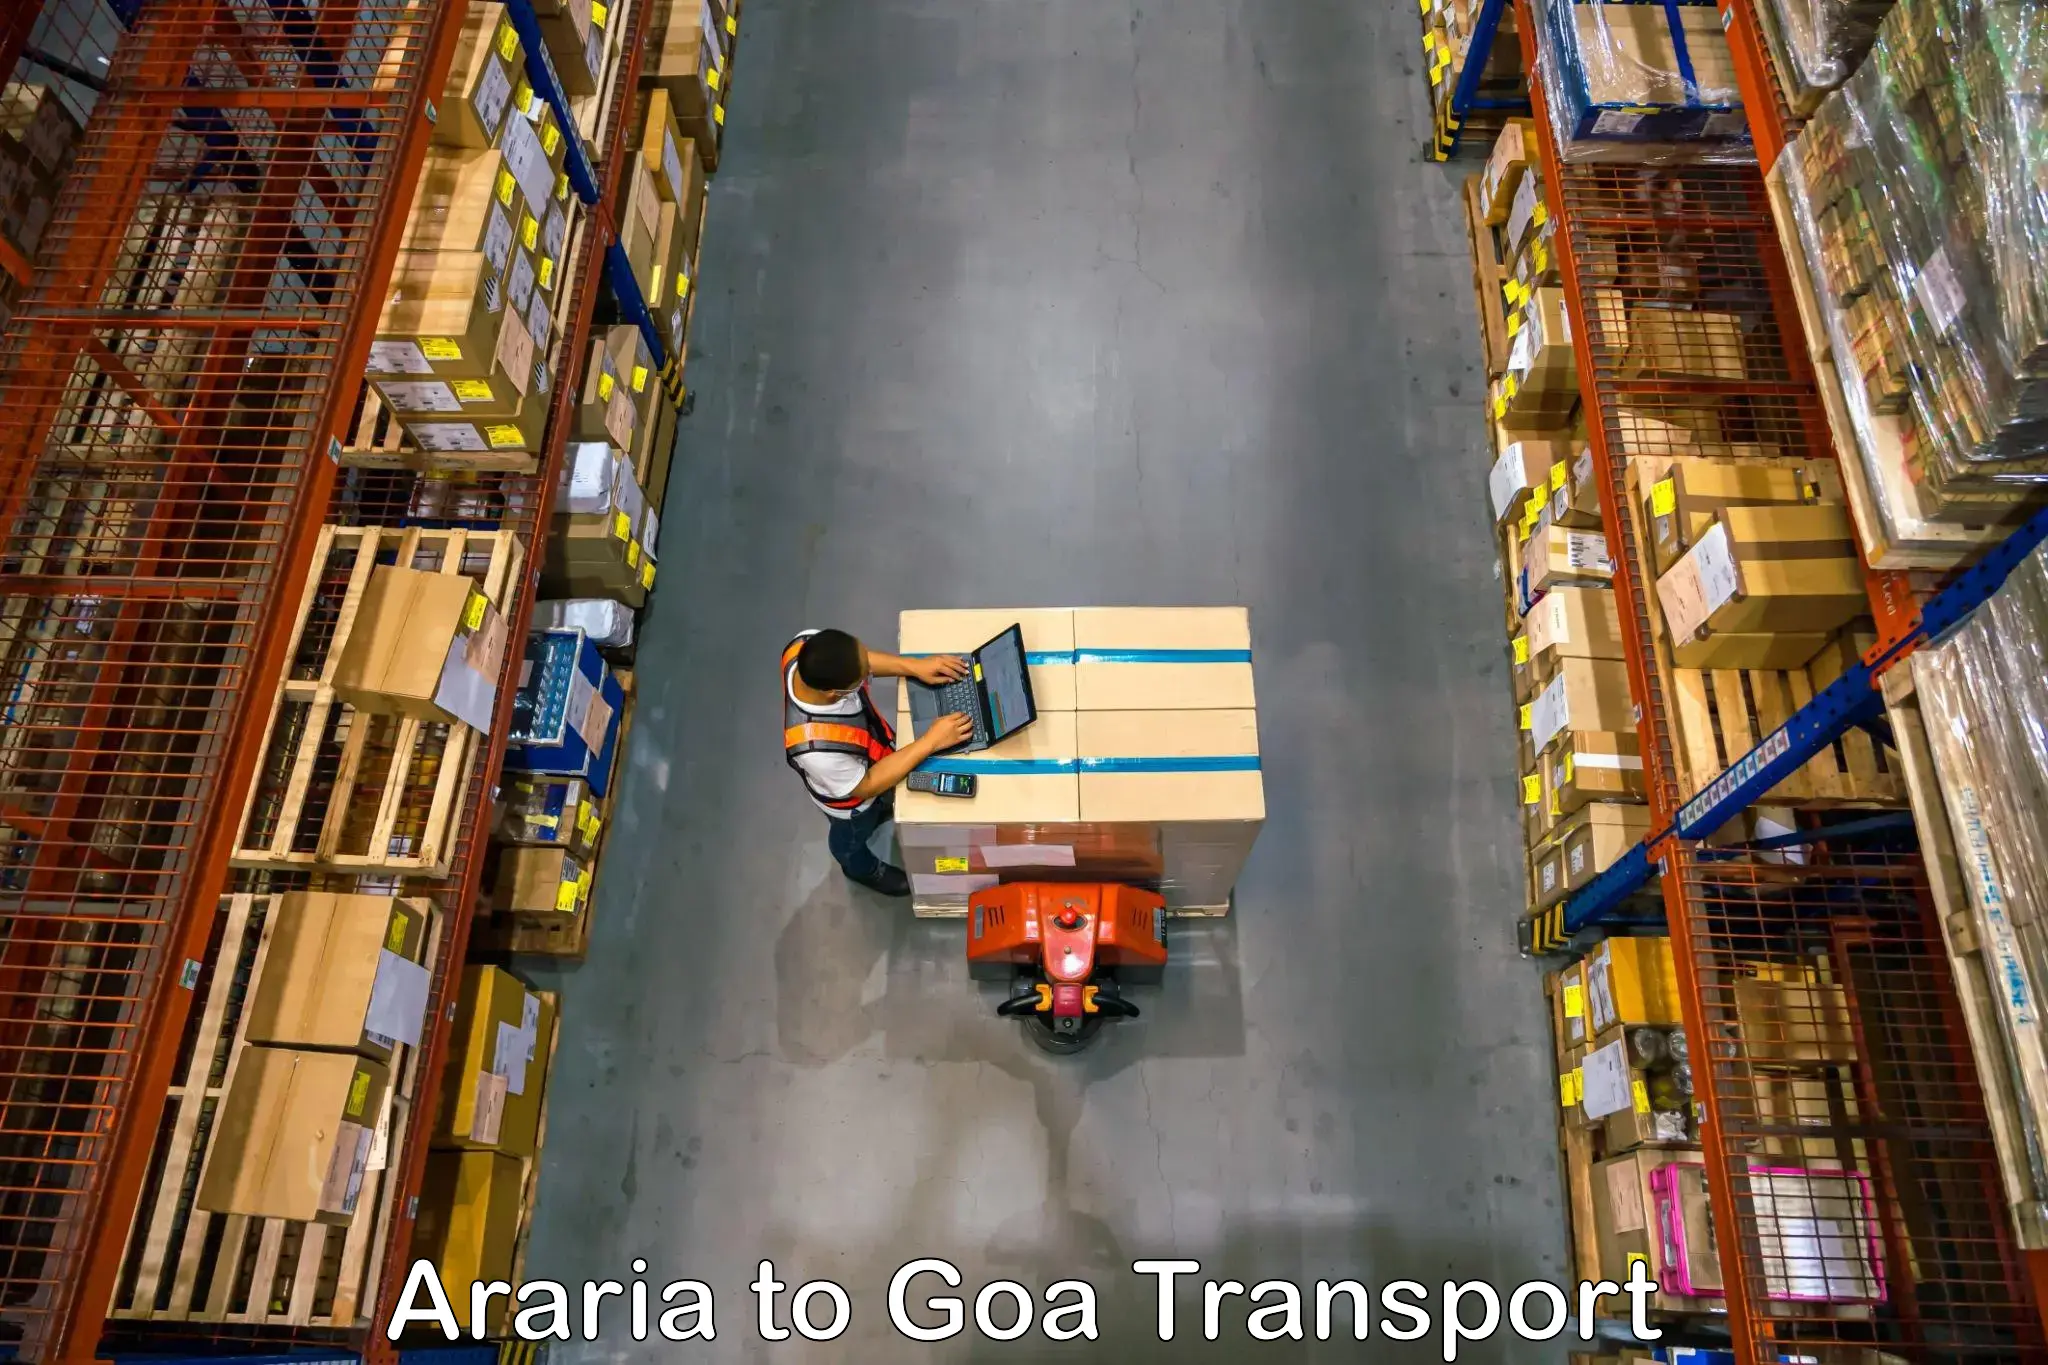 Daily transport service Araria to Mormugao Port